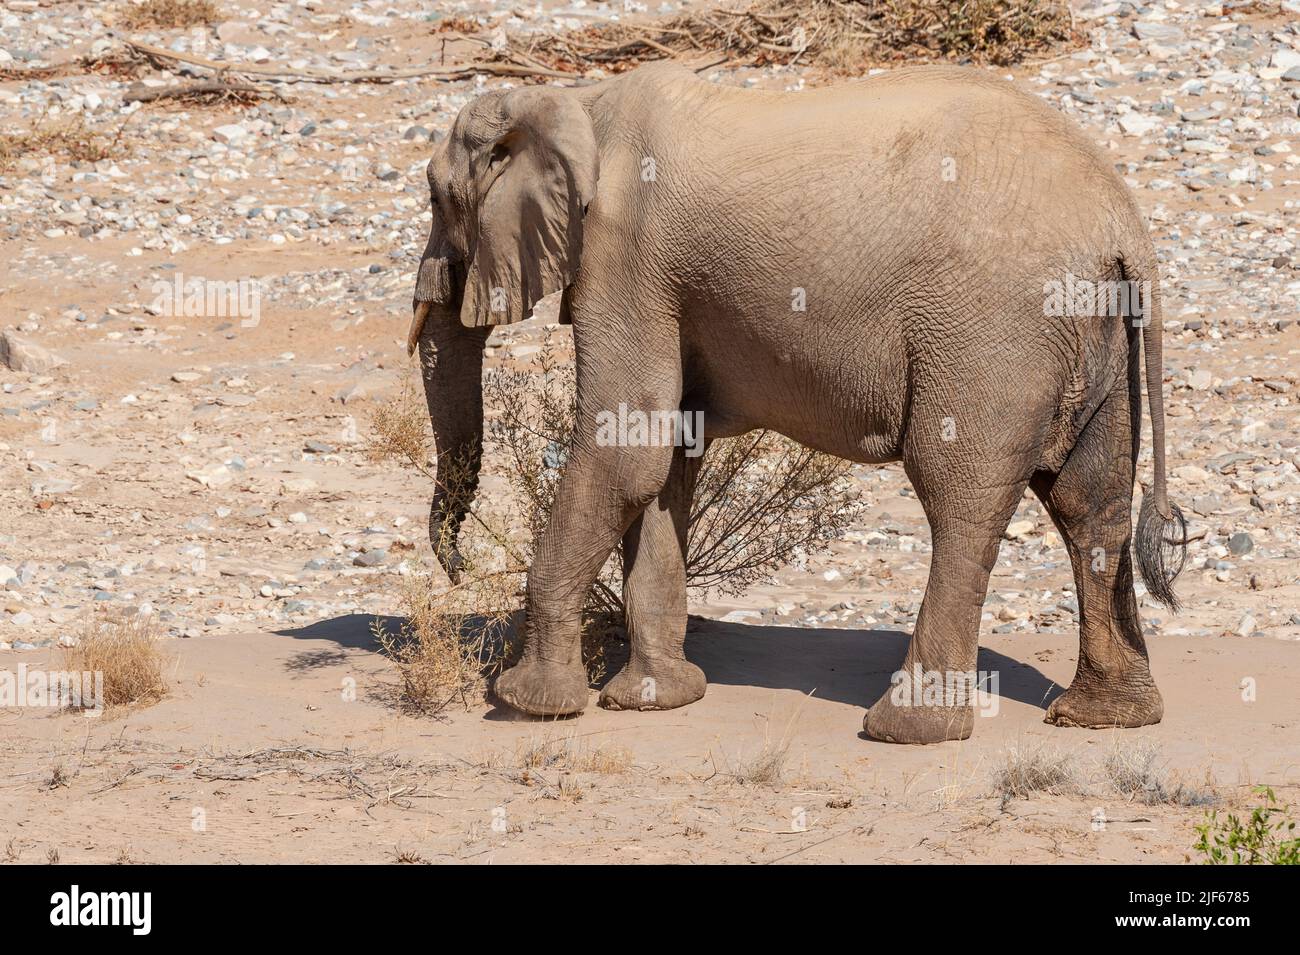 Impression d'un éléphant de désert africain - Loxodonta Africana- errant dans le désert dans le nord-ouest de la Namibie. Banque D'Images